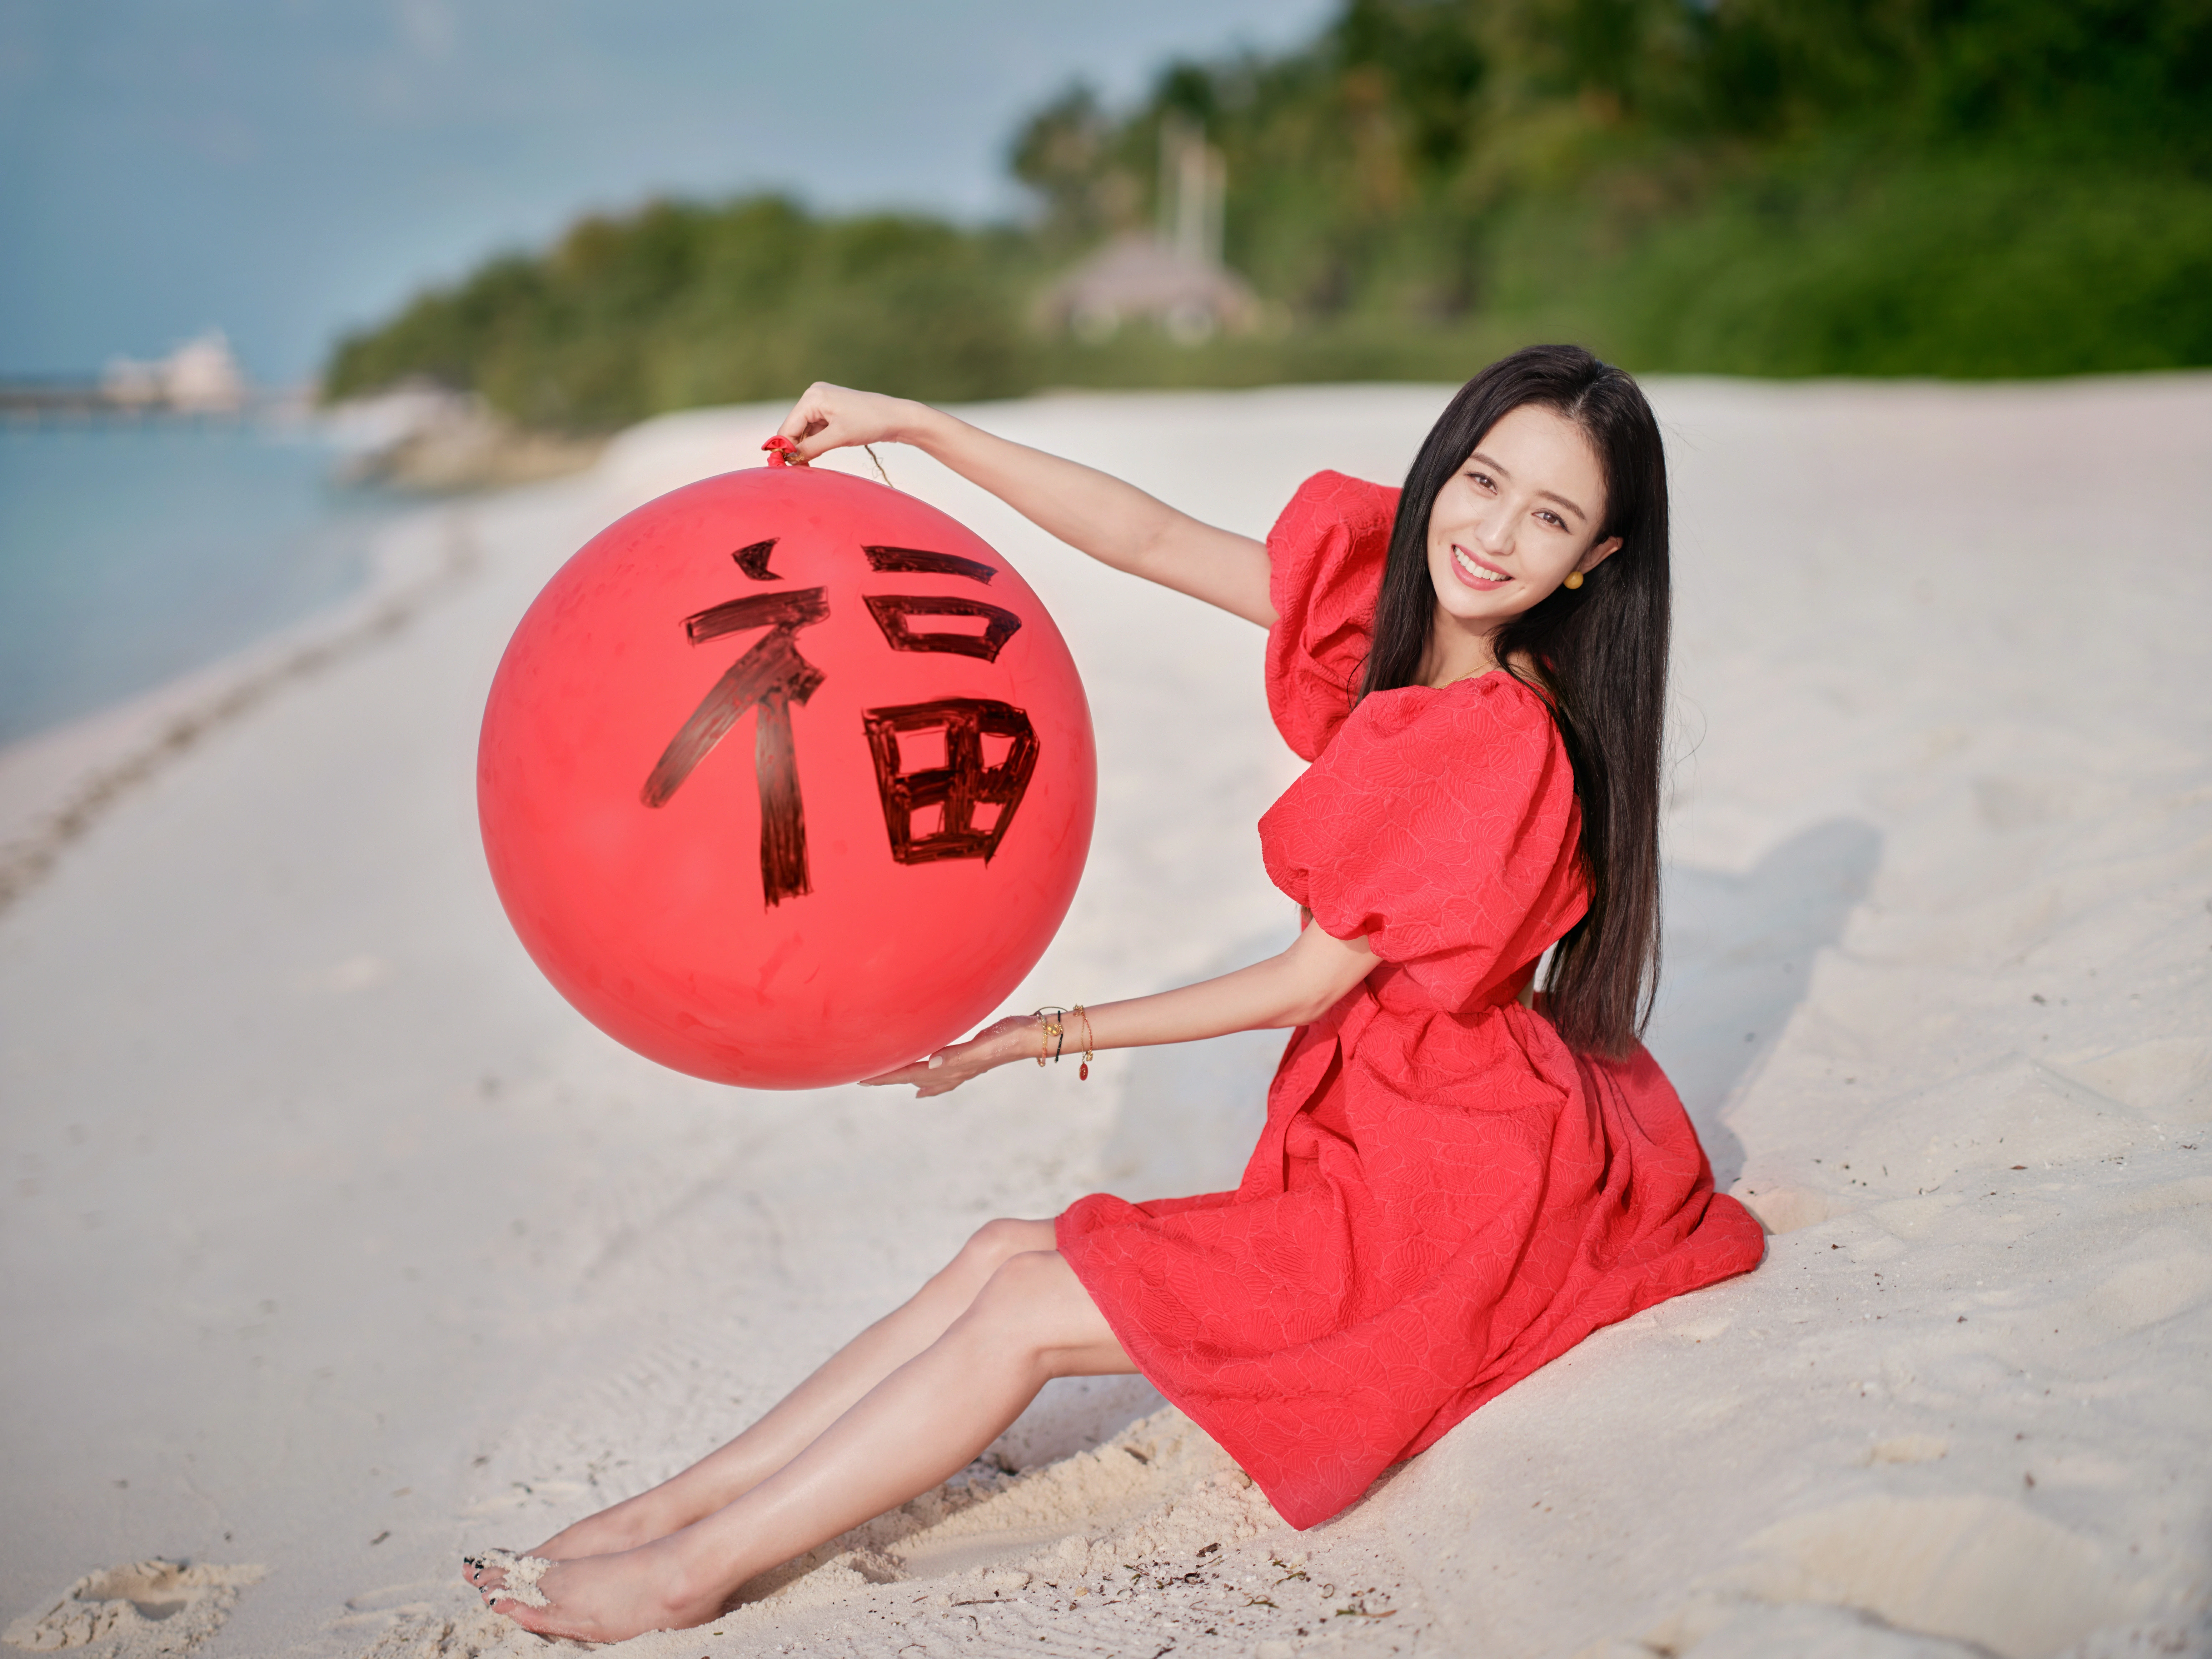 佟丽娅新春海边写真 红色吊带连衣裙笑容甜美,1 (12)